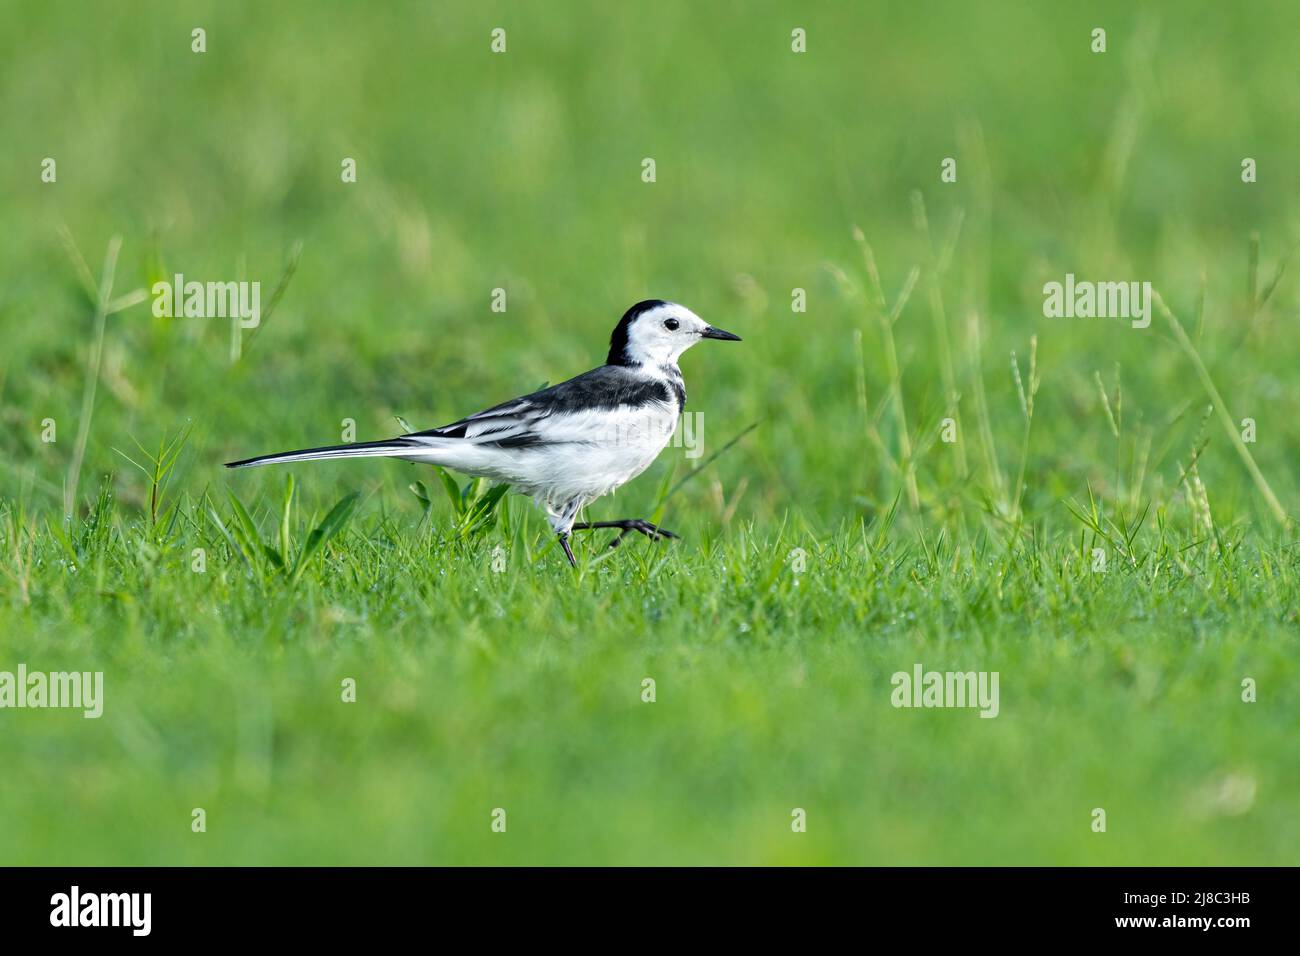 Primo piano di una coda nera che cammina nell'erba durante l'ora primaverile nelle giornate di sole Foto Stock